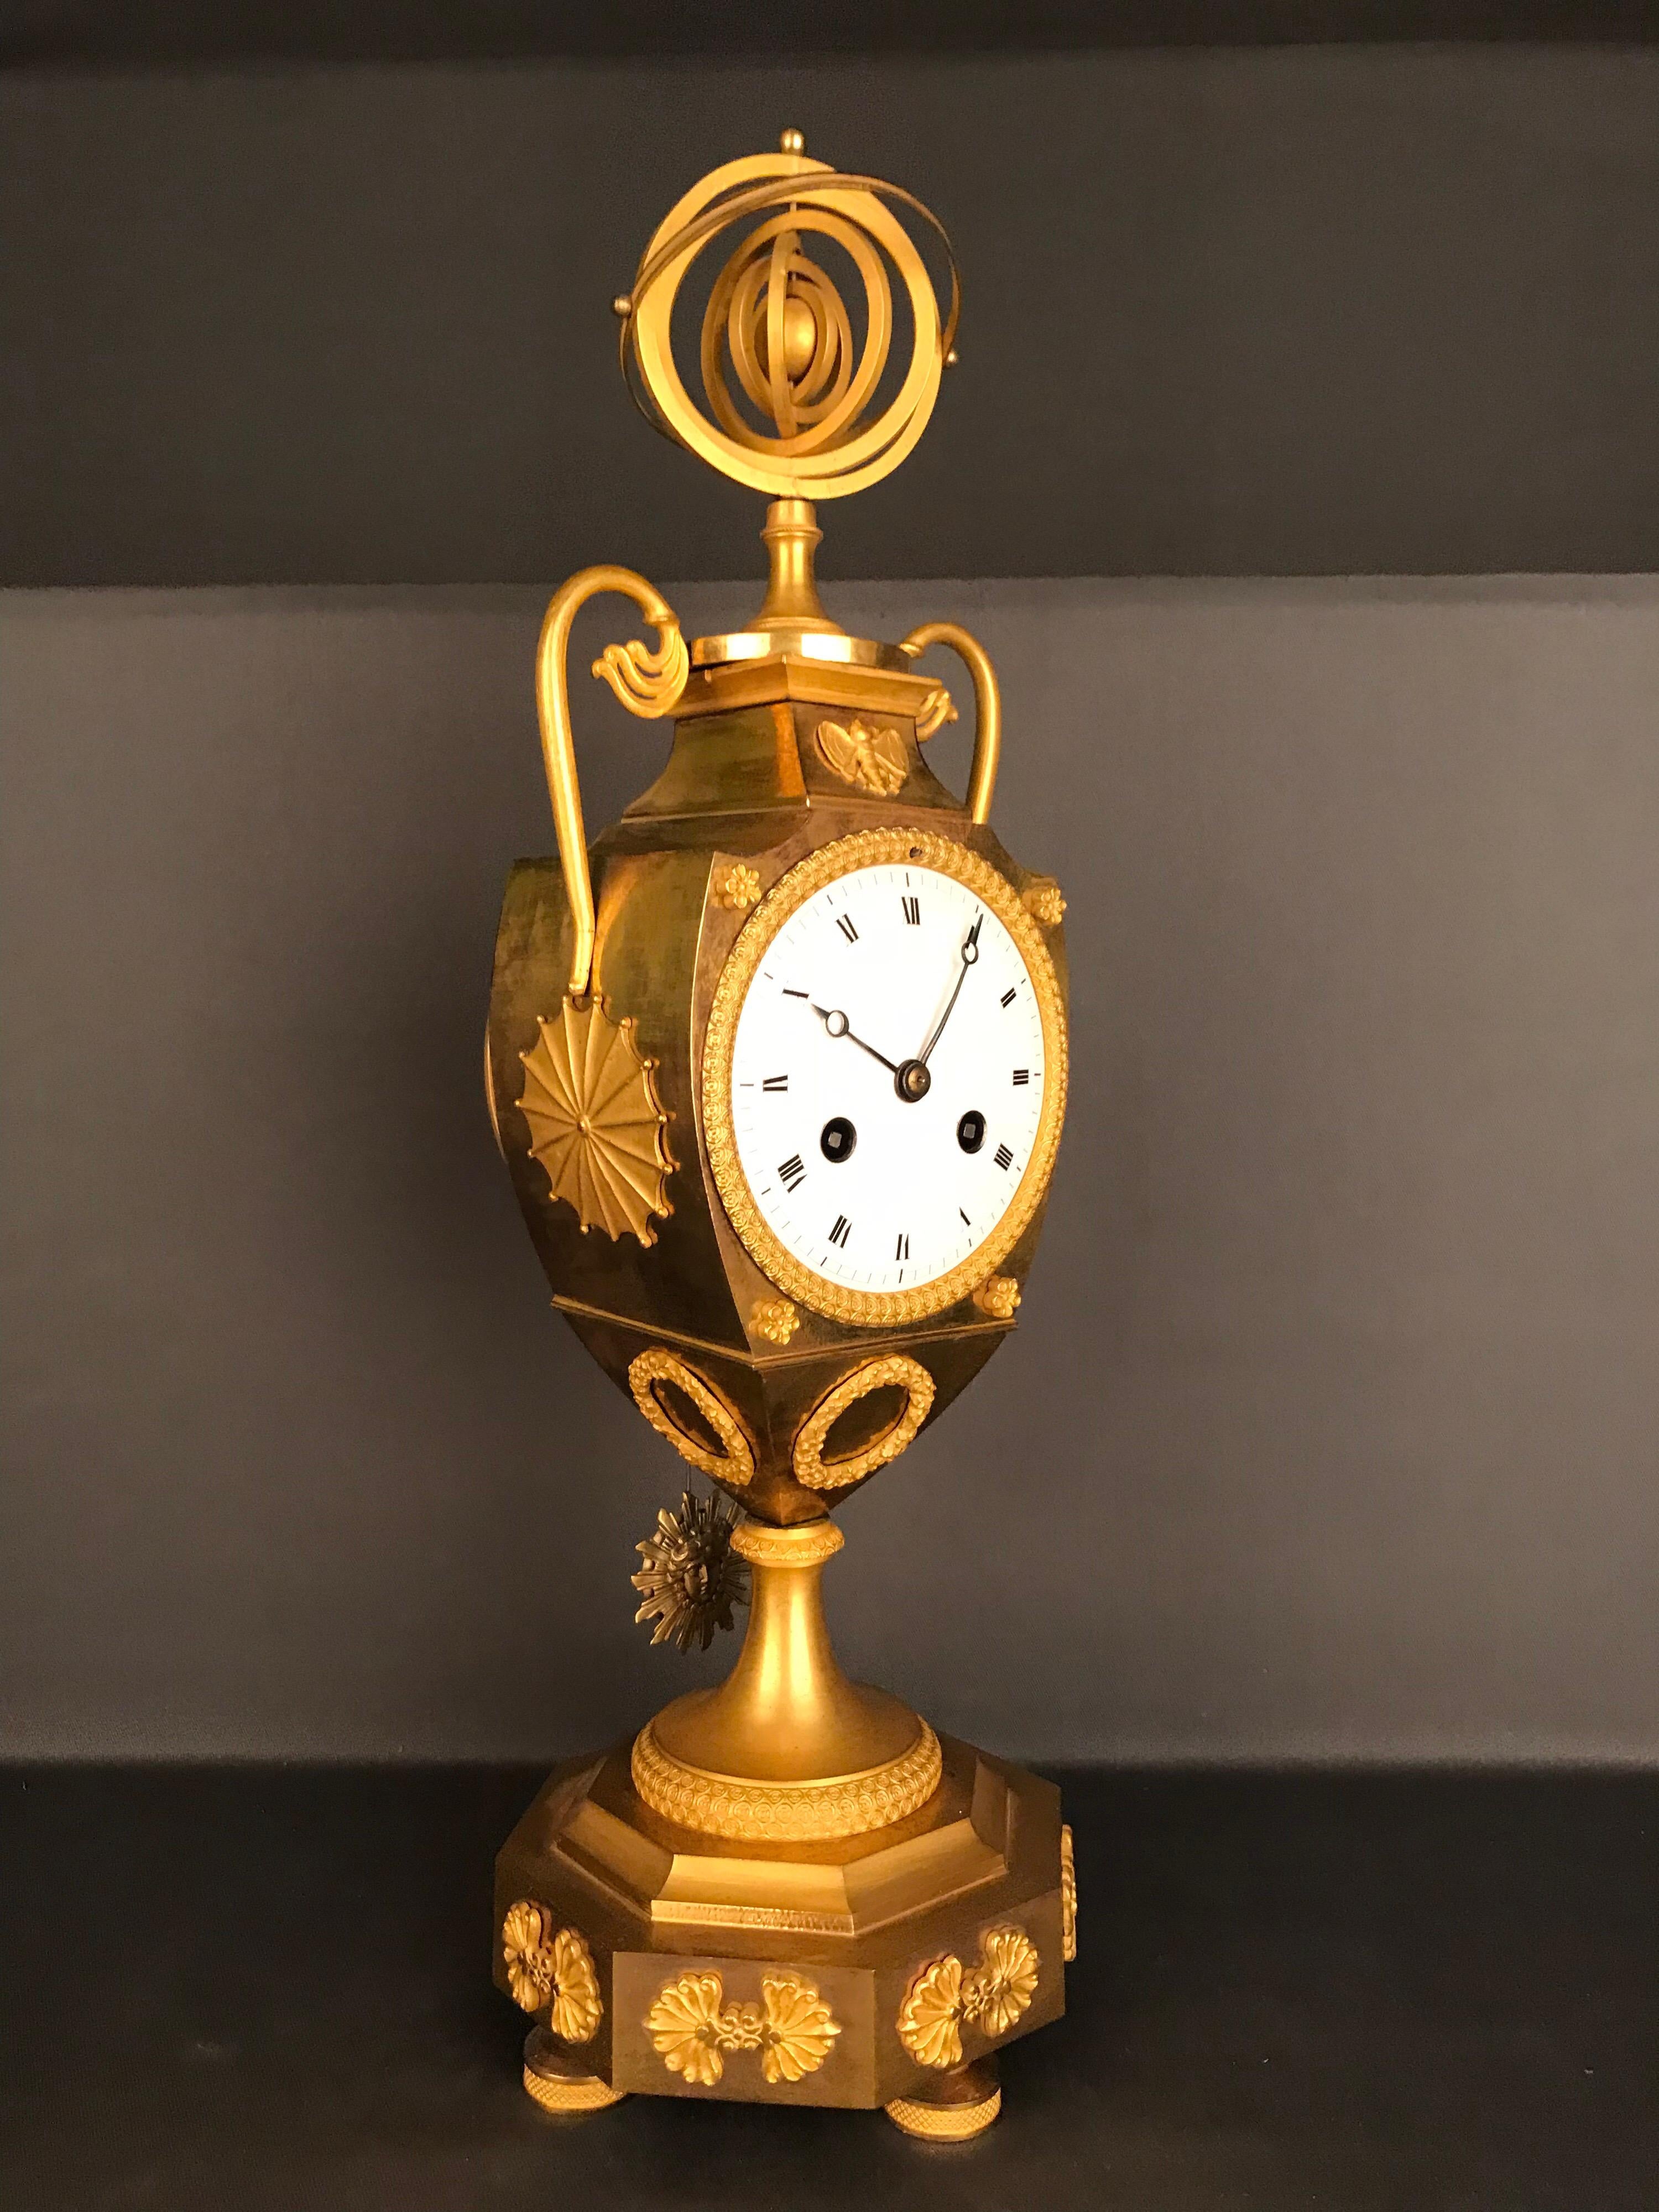 Einzigartige Empire-Bronzeuhr mit Pendel, feuervergoldet, um 1810.

Original französisches Empire-Pendel, ca. 1810-1820.

Vasen- oder amphorenförmiger Körper auf einem gestuften Sockel.
Sehr hohe Qualität der Bronzezisilation.
Hochwertige